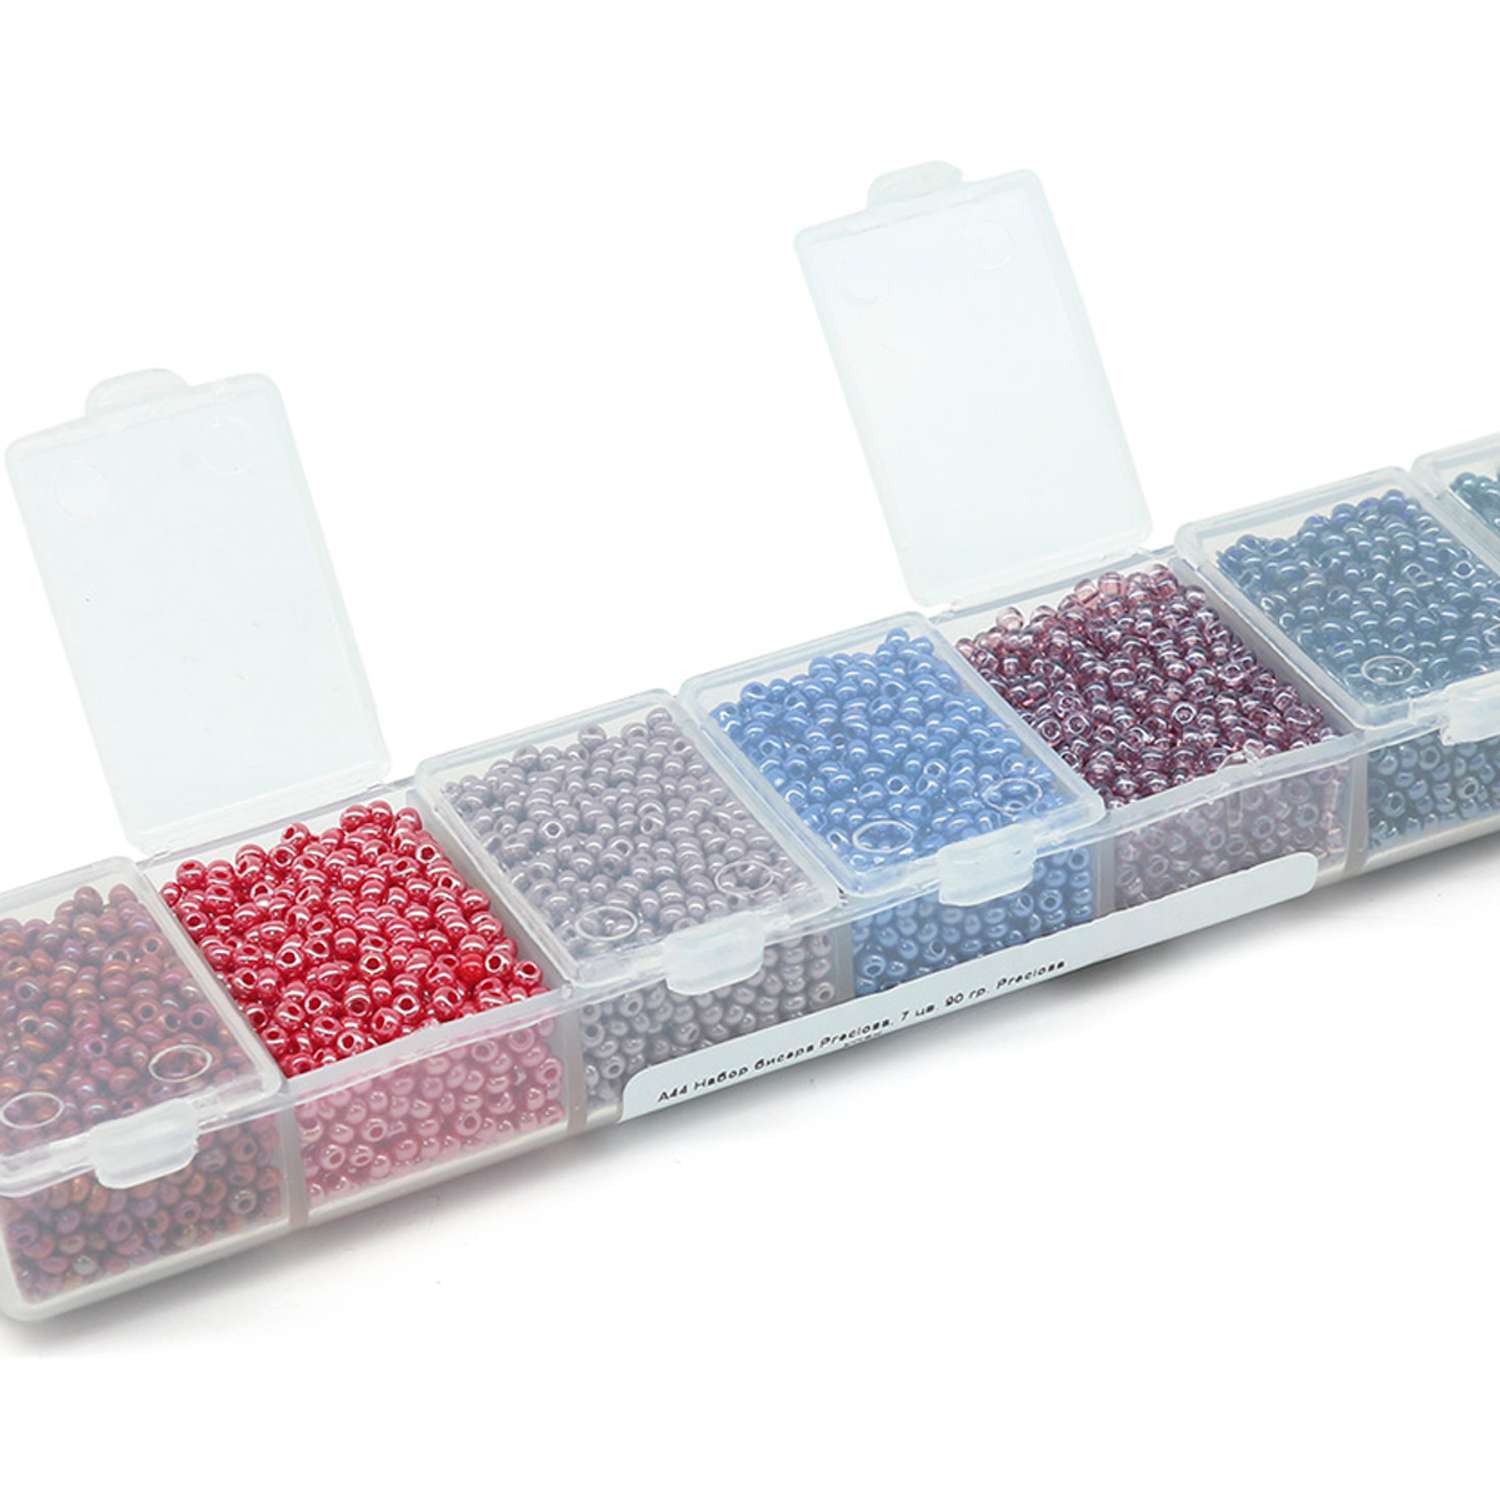 Набор бисера Preciosa с эффектами откалиброванный для вышивки плетения творчества в наборе 7 цветов 90 гр A44 - фото 2